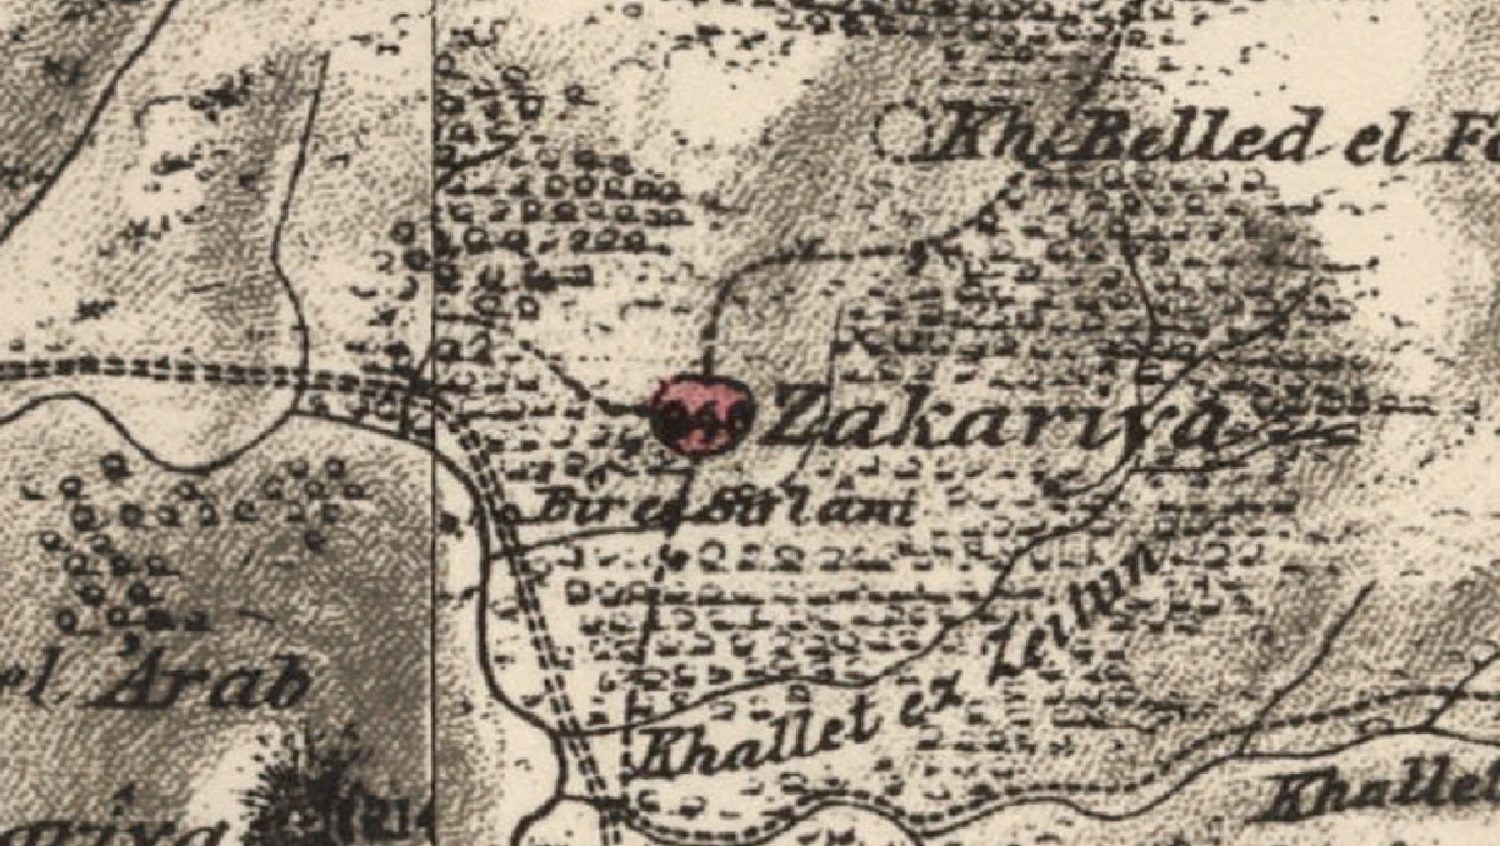 Map of the Zakariyya area circa 1870s